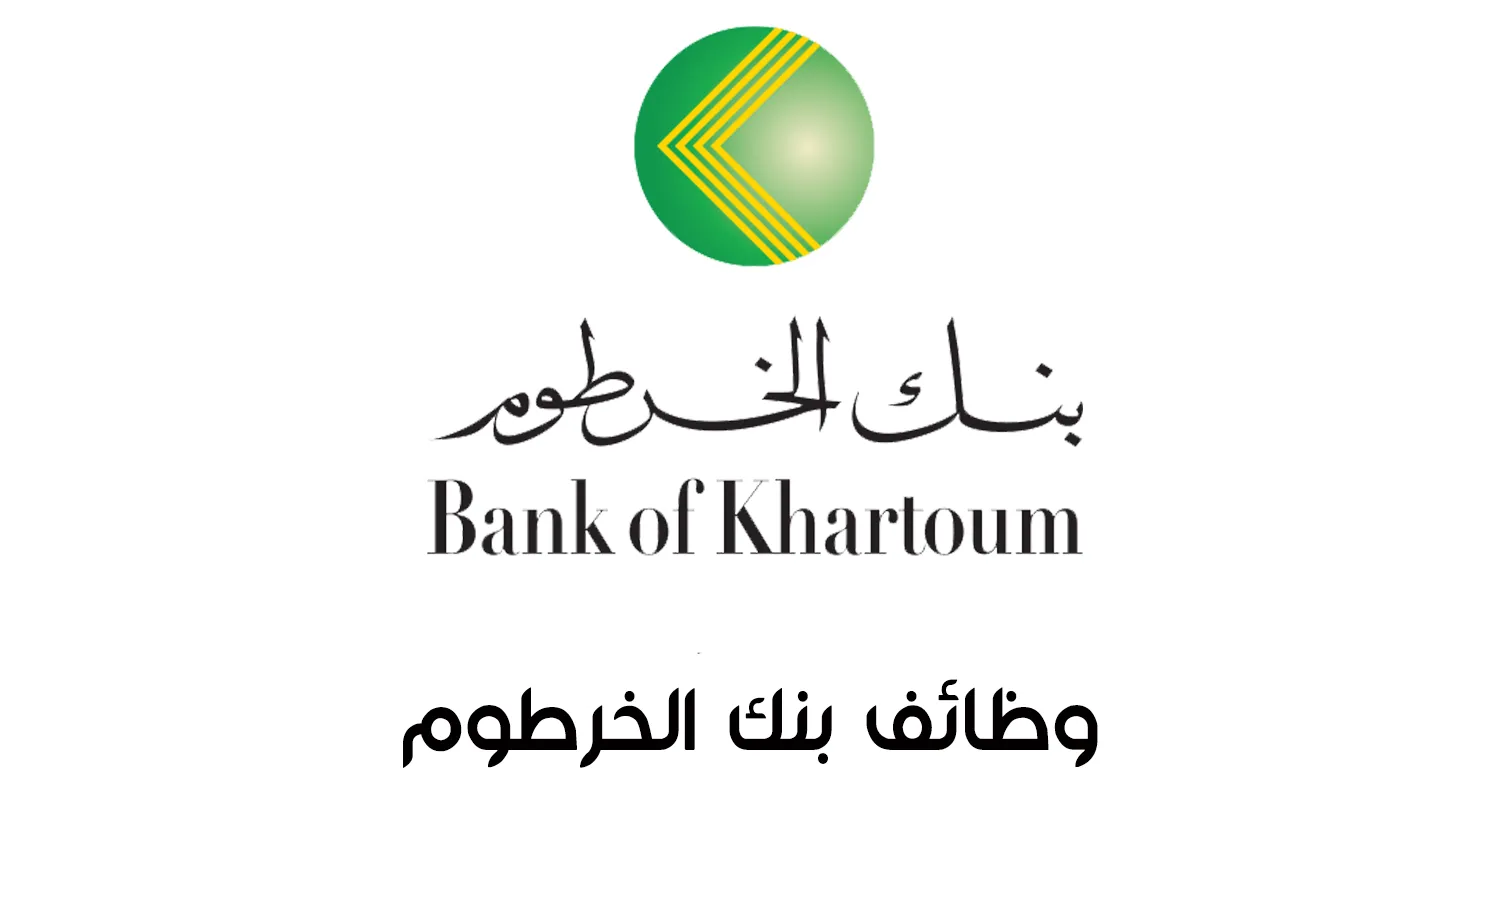  صراف شامل Branch Universal Teller | بنك الخرطوم  فرع عطبرة Bank of Khartoum 